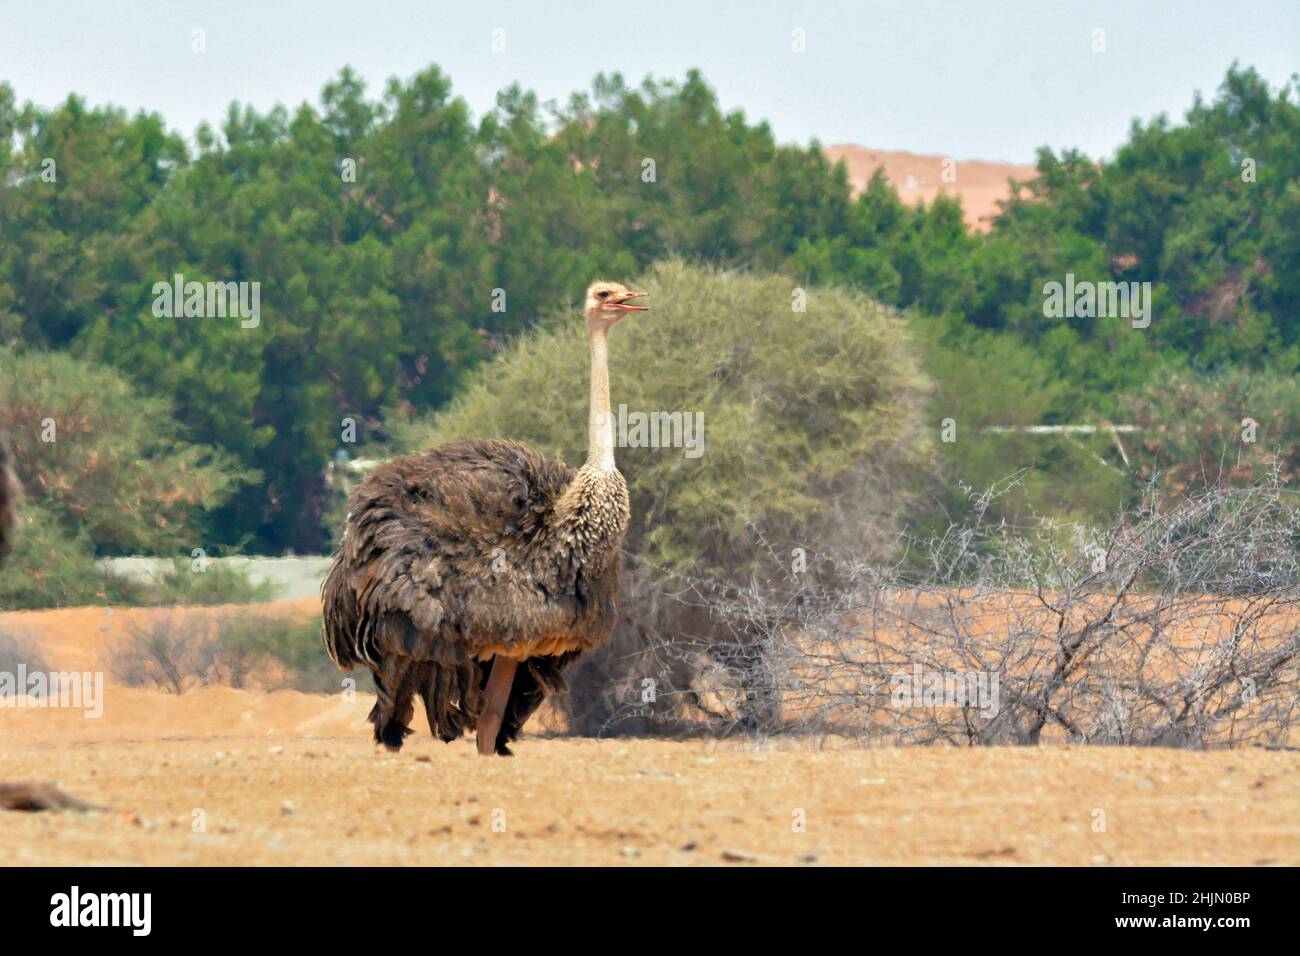 Common ostrich female Stock Photo